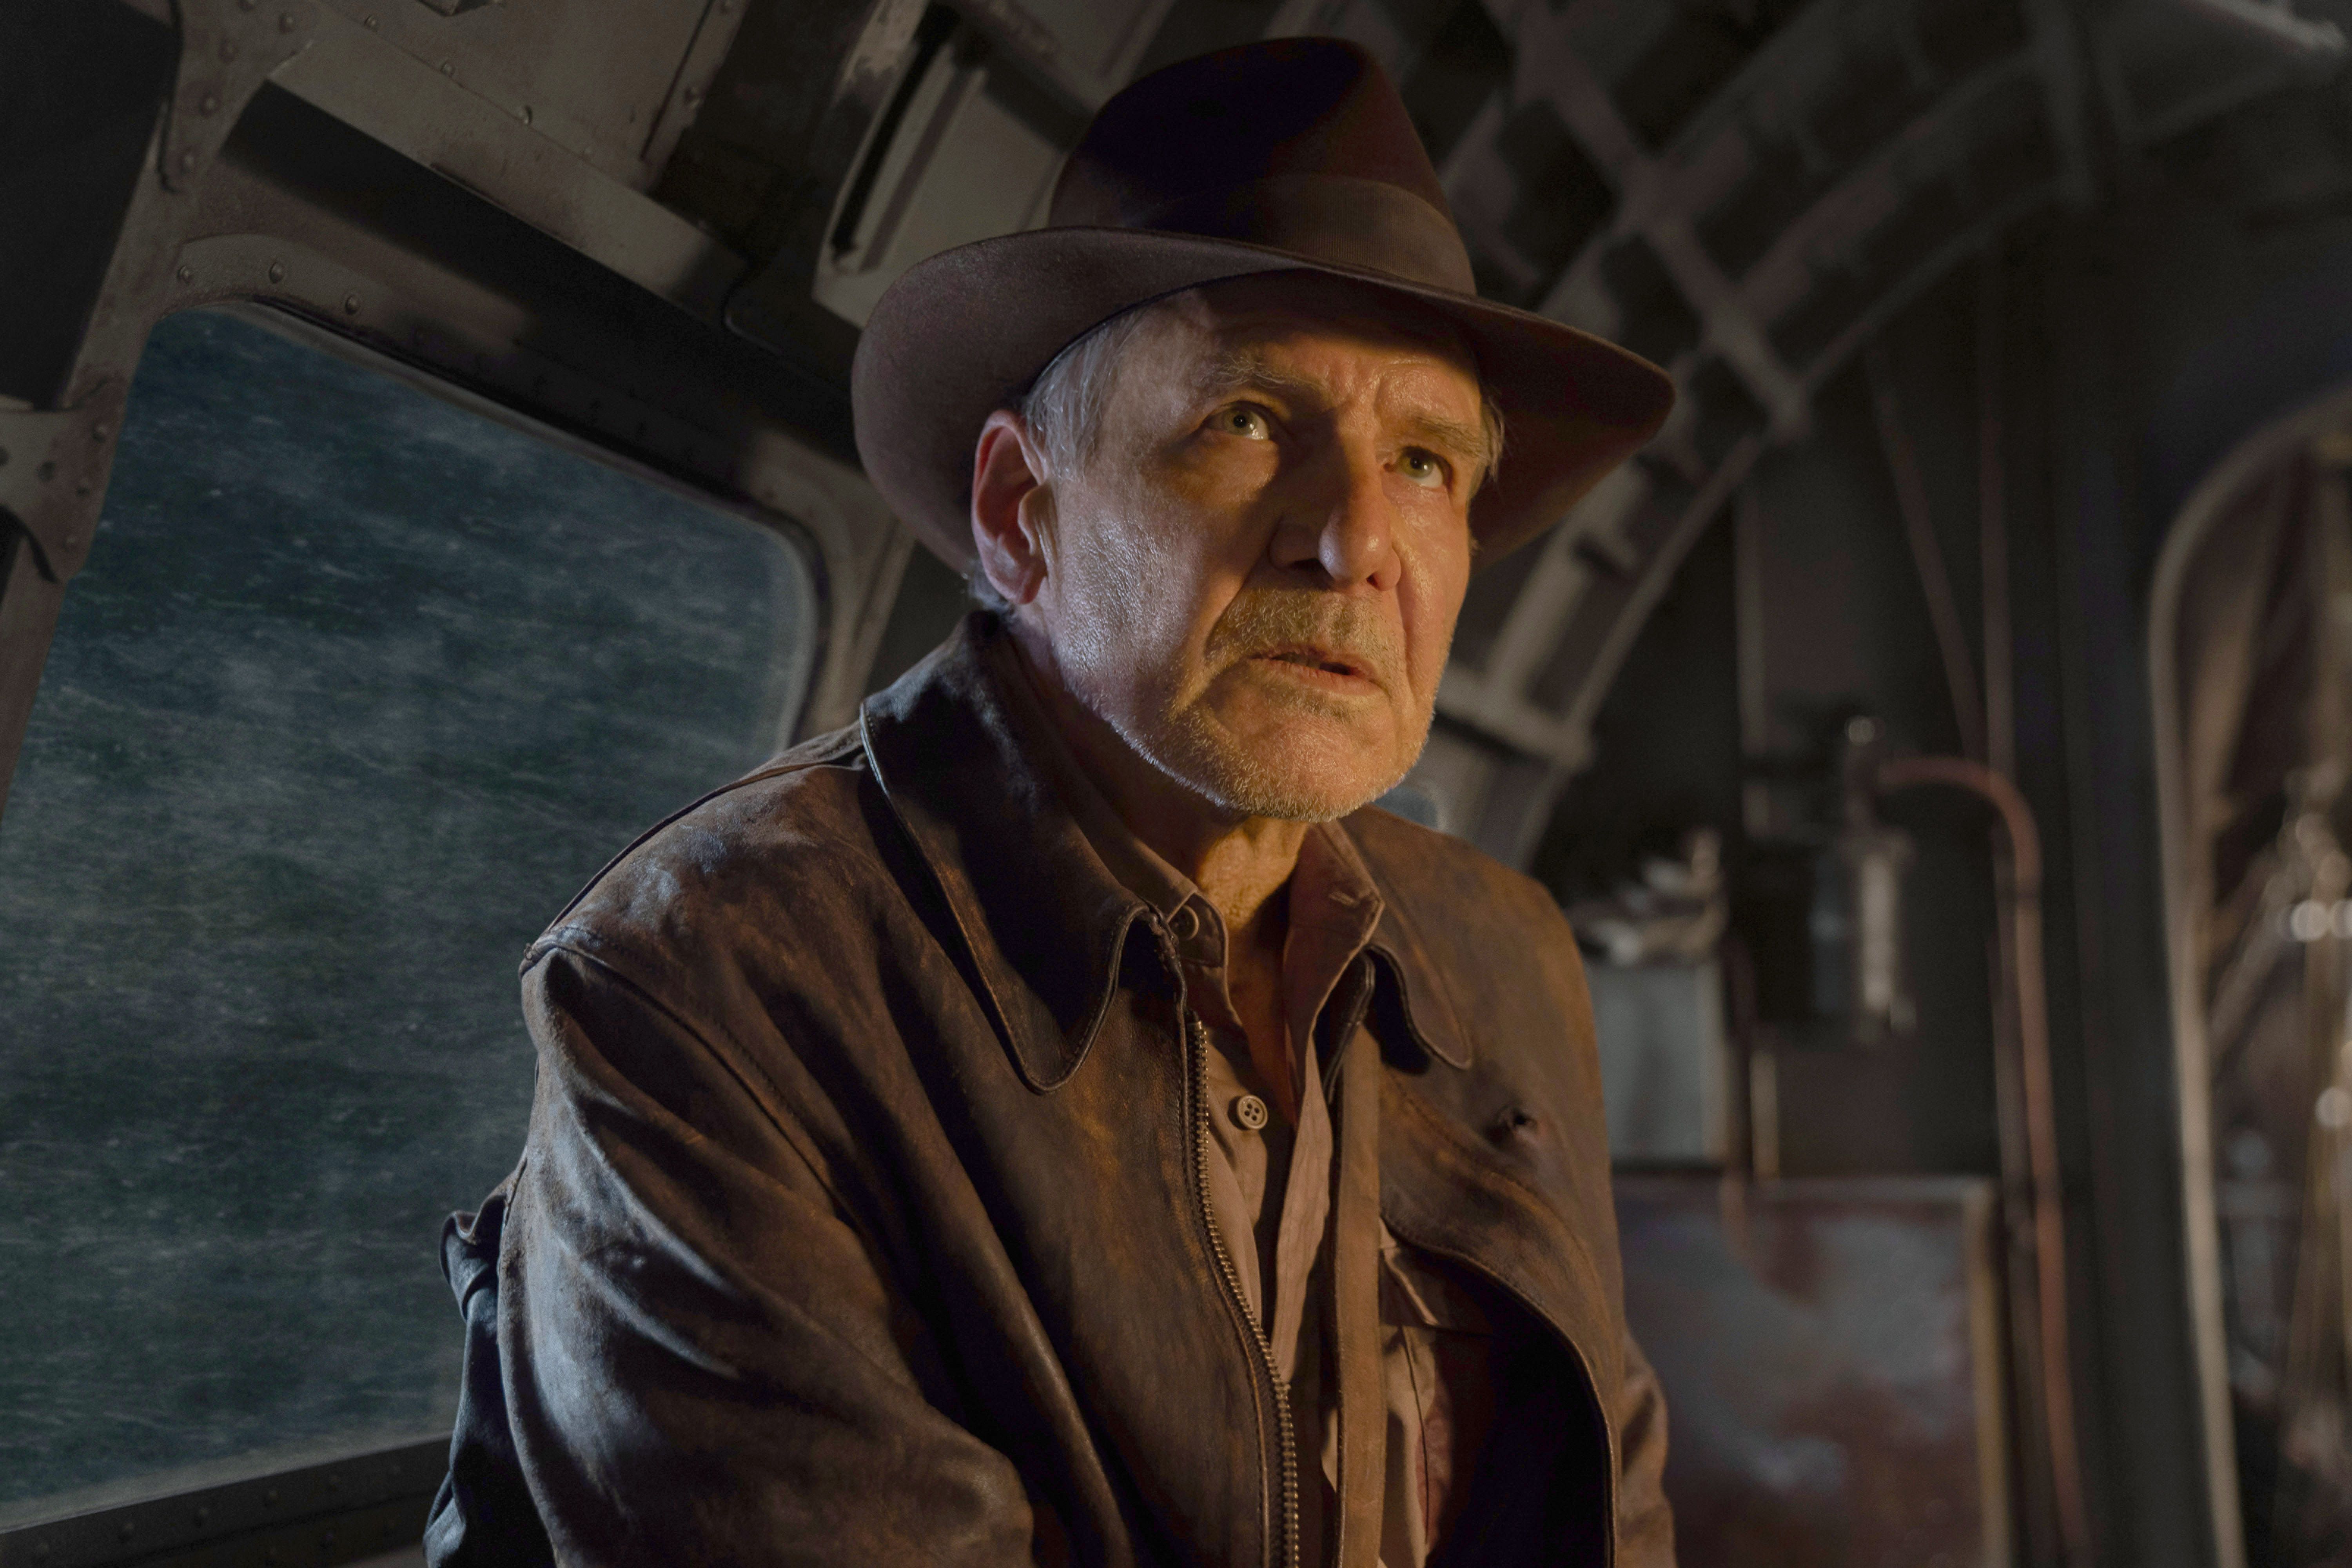 Indiana Jones 5 larga com 47% de aprovação no Rotten Tomatoes